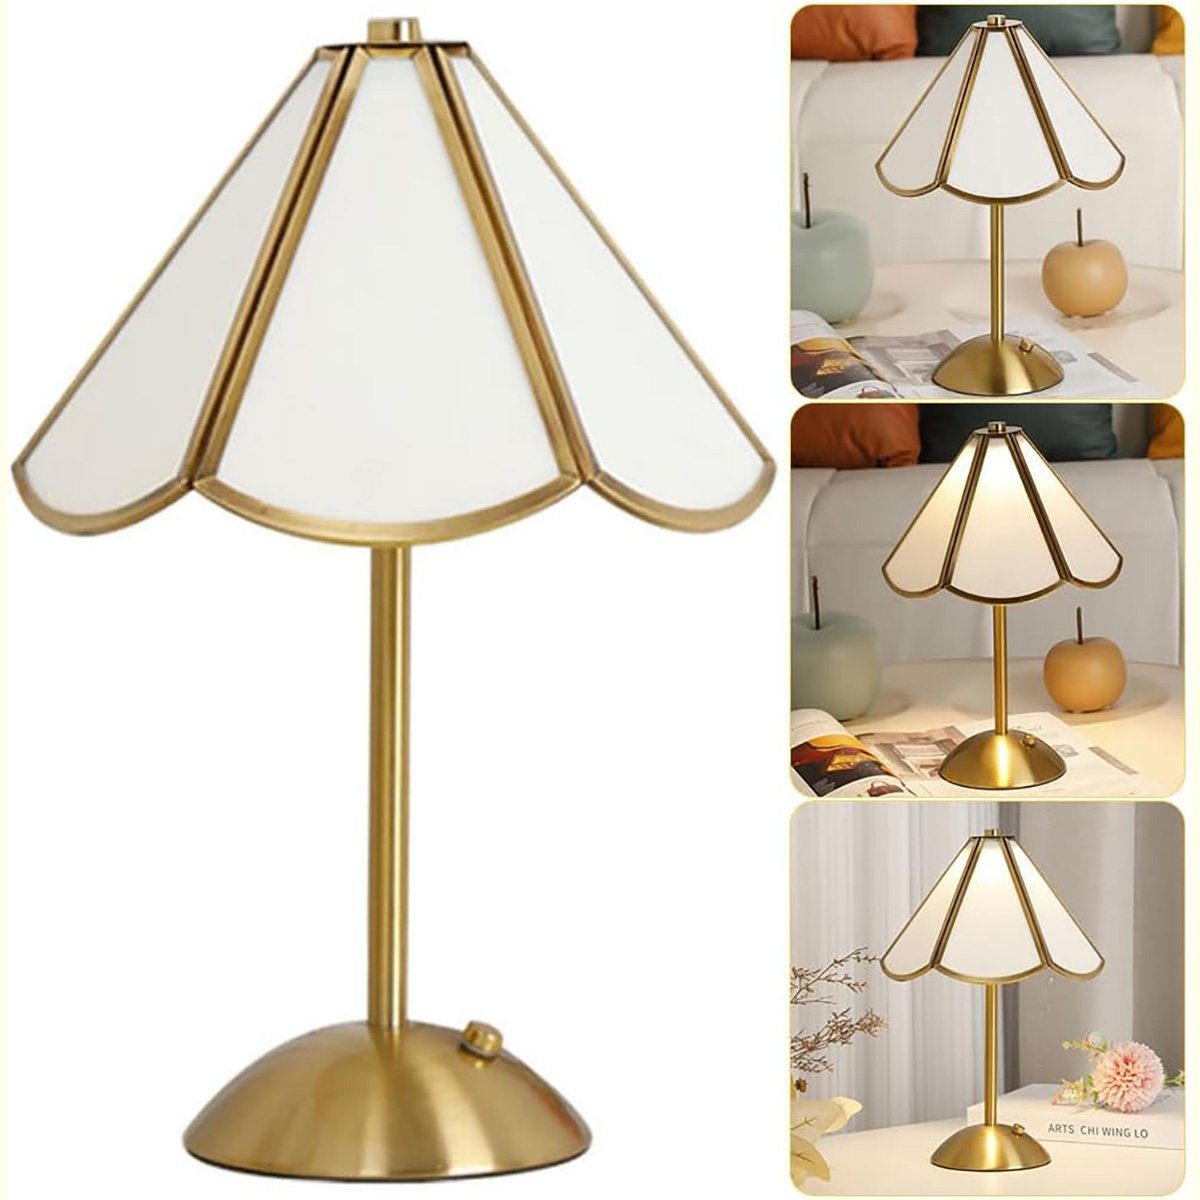 götäzer Nachttischlampe Nachttischlampe für Schlafzimmer, Dekorative Nachttischlampe, dekorative Tischlampe